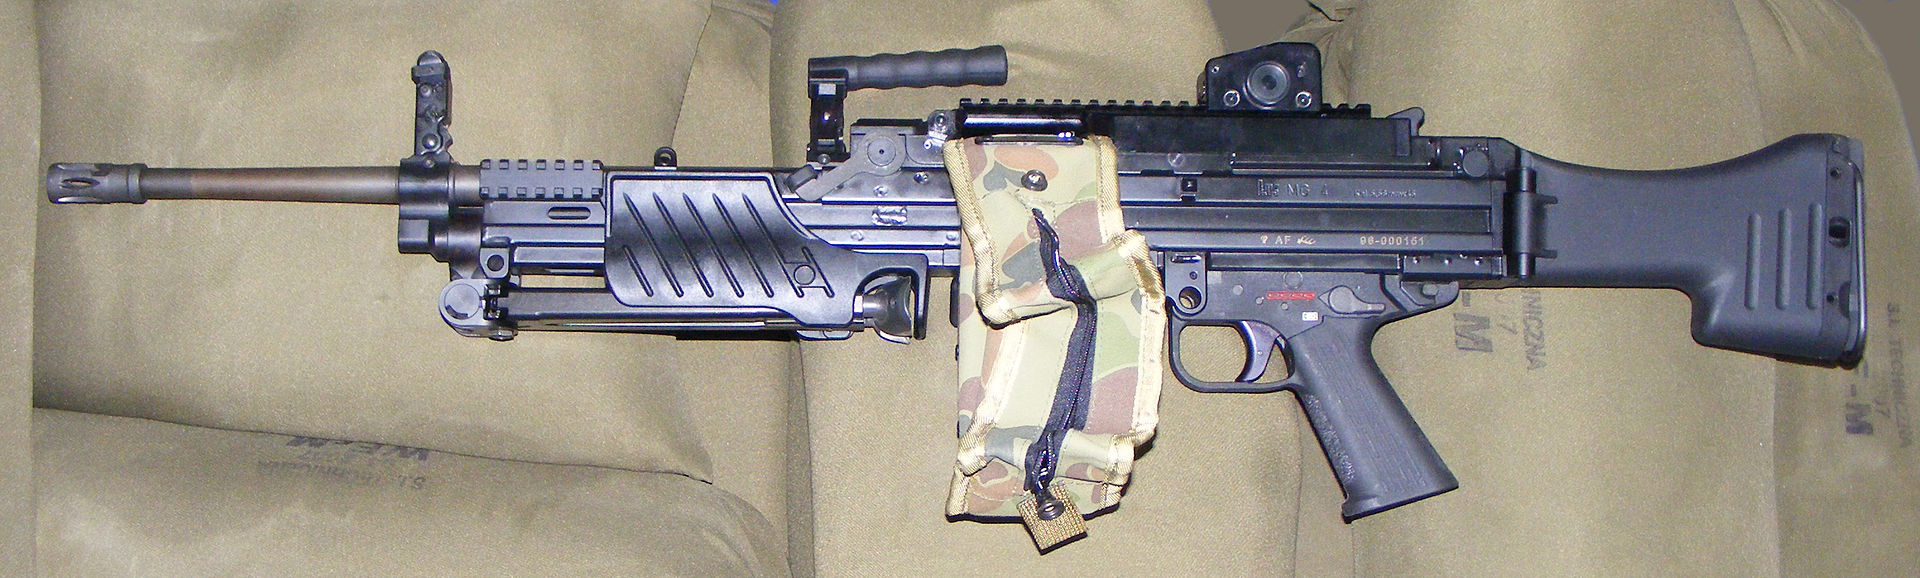 Գերմանական Heckler & Koch ընկերության MG4 գնդացիրը